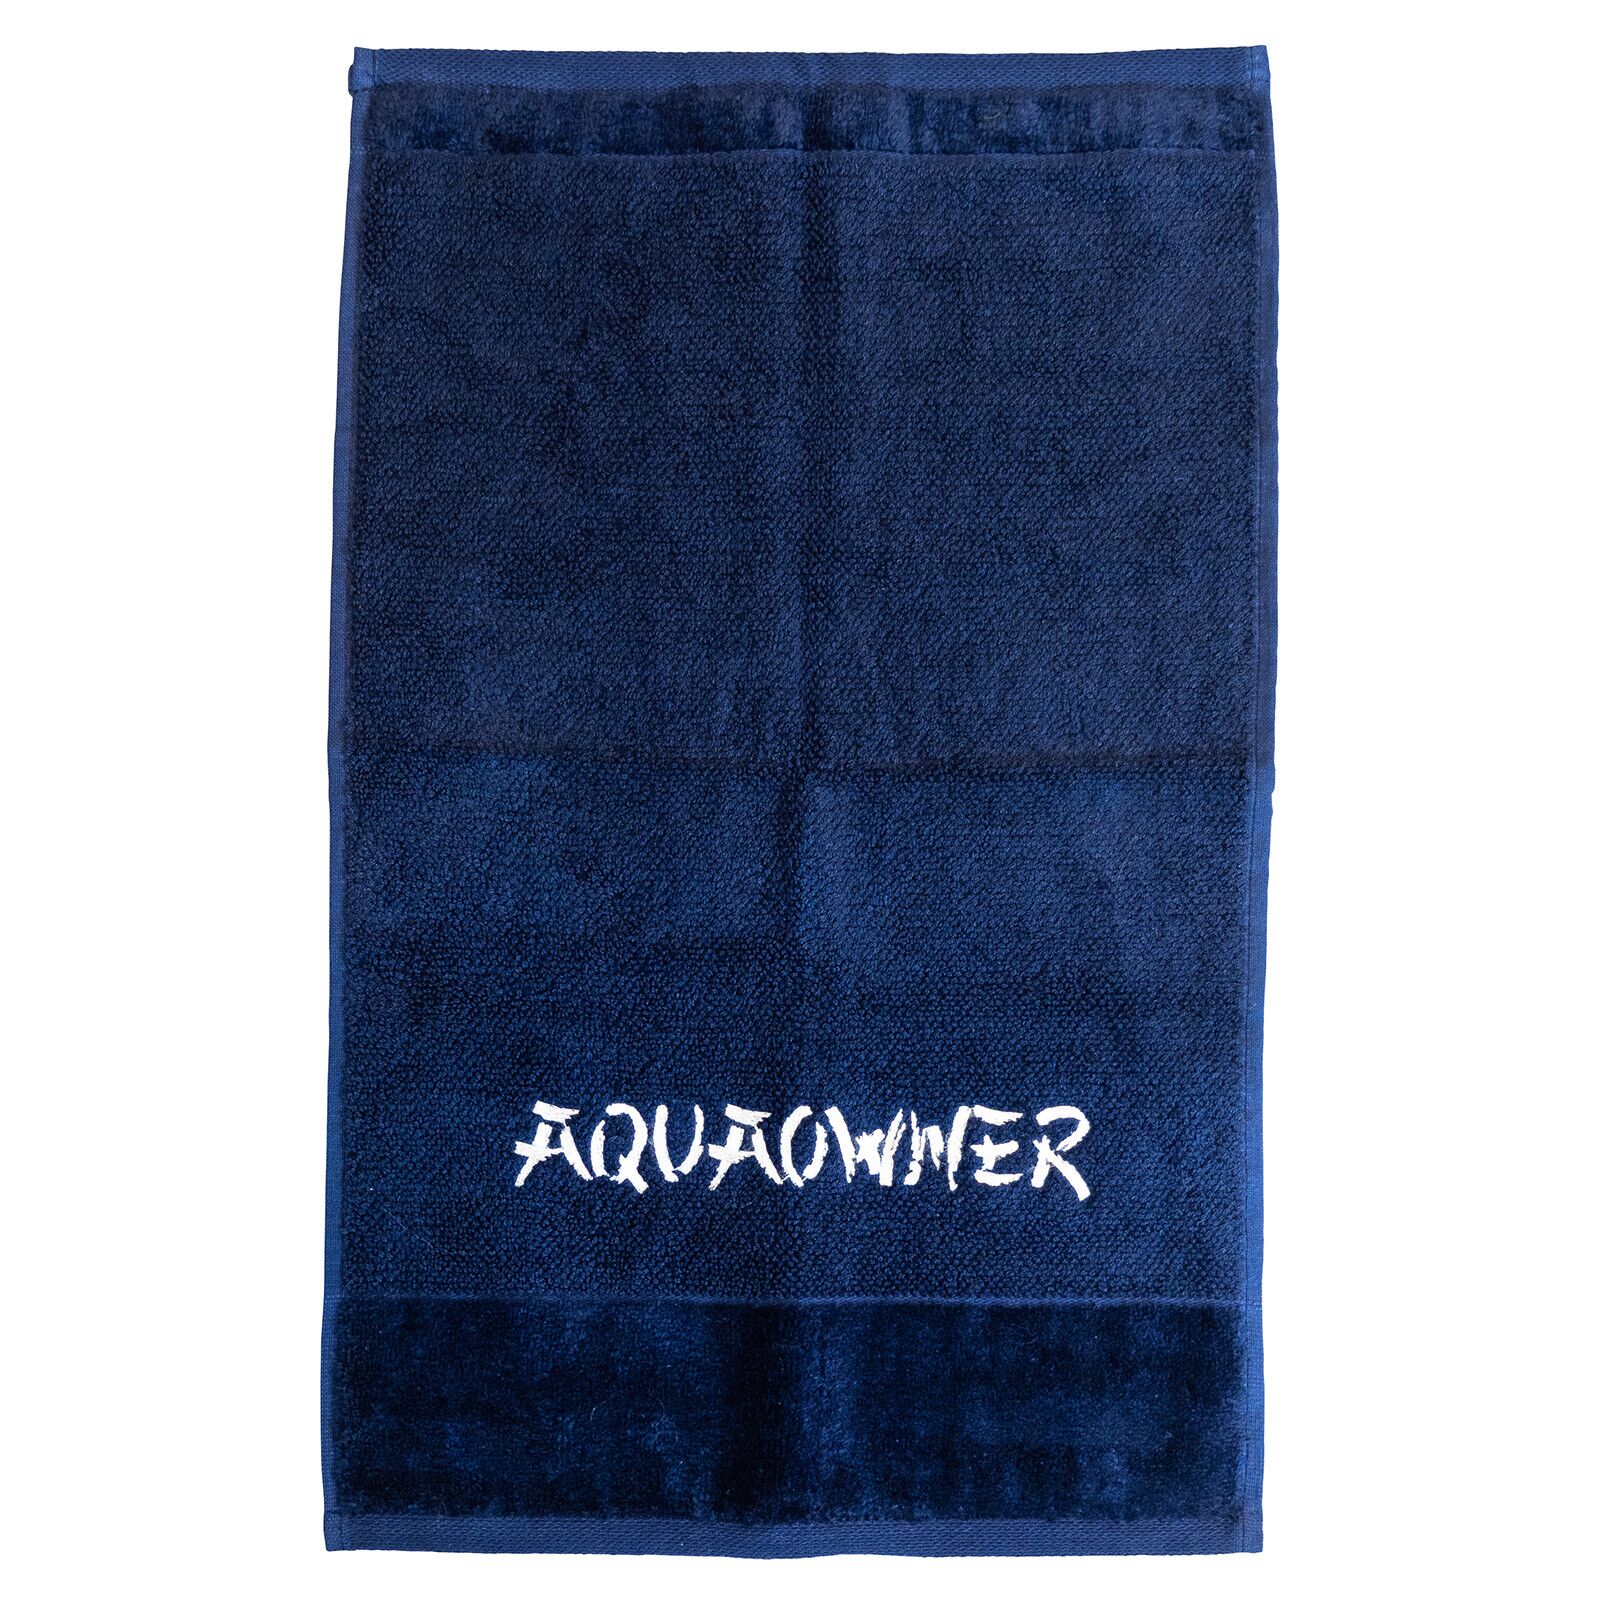 AquaOwner - Deluxe Towel | Aquasabi - Aquascaping Shop